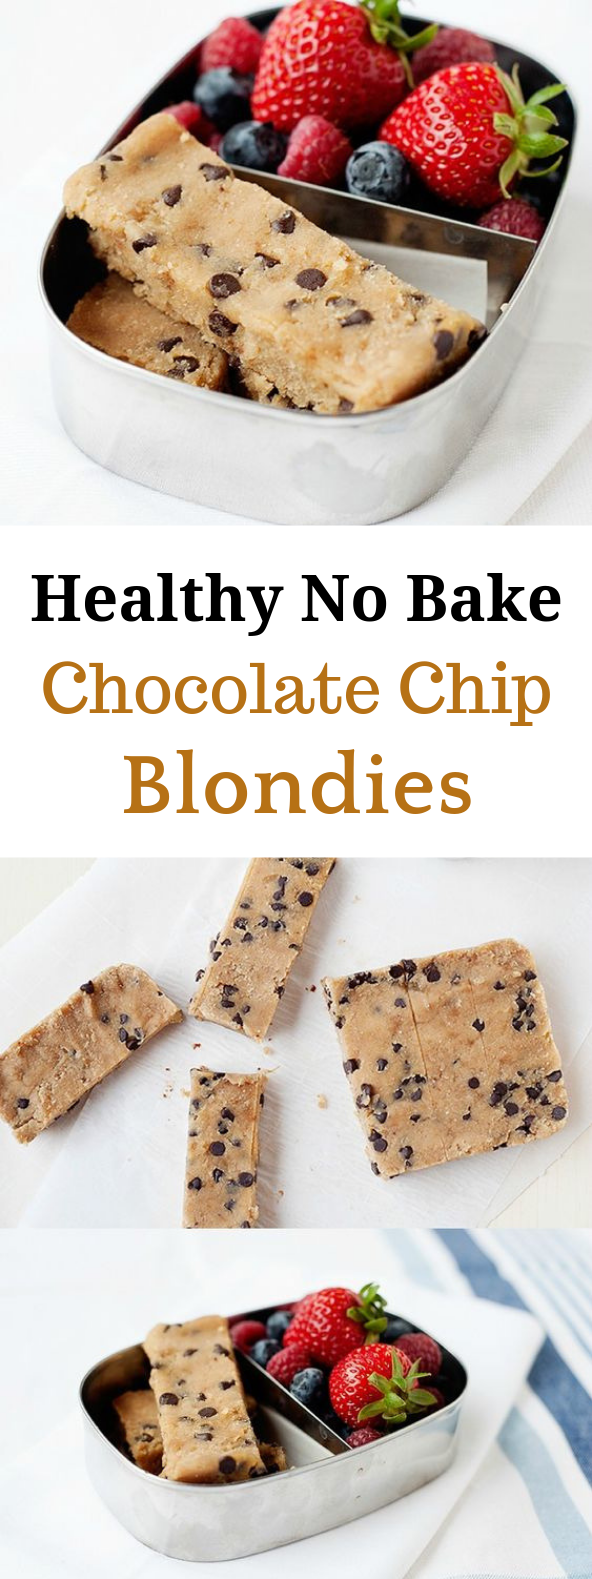 NO BAKE HEALTHY CHOCOLATE CHIP BLONDIES #HealthyDessert #Chocolate